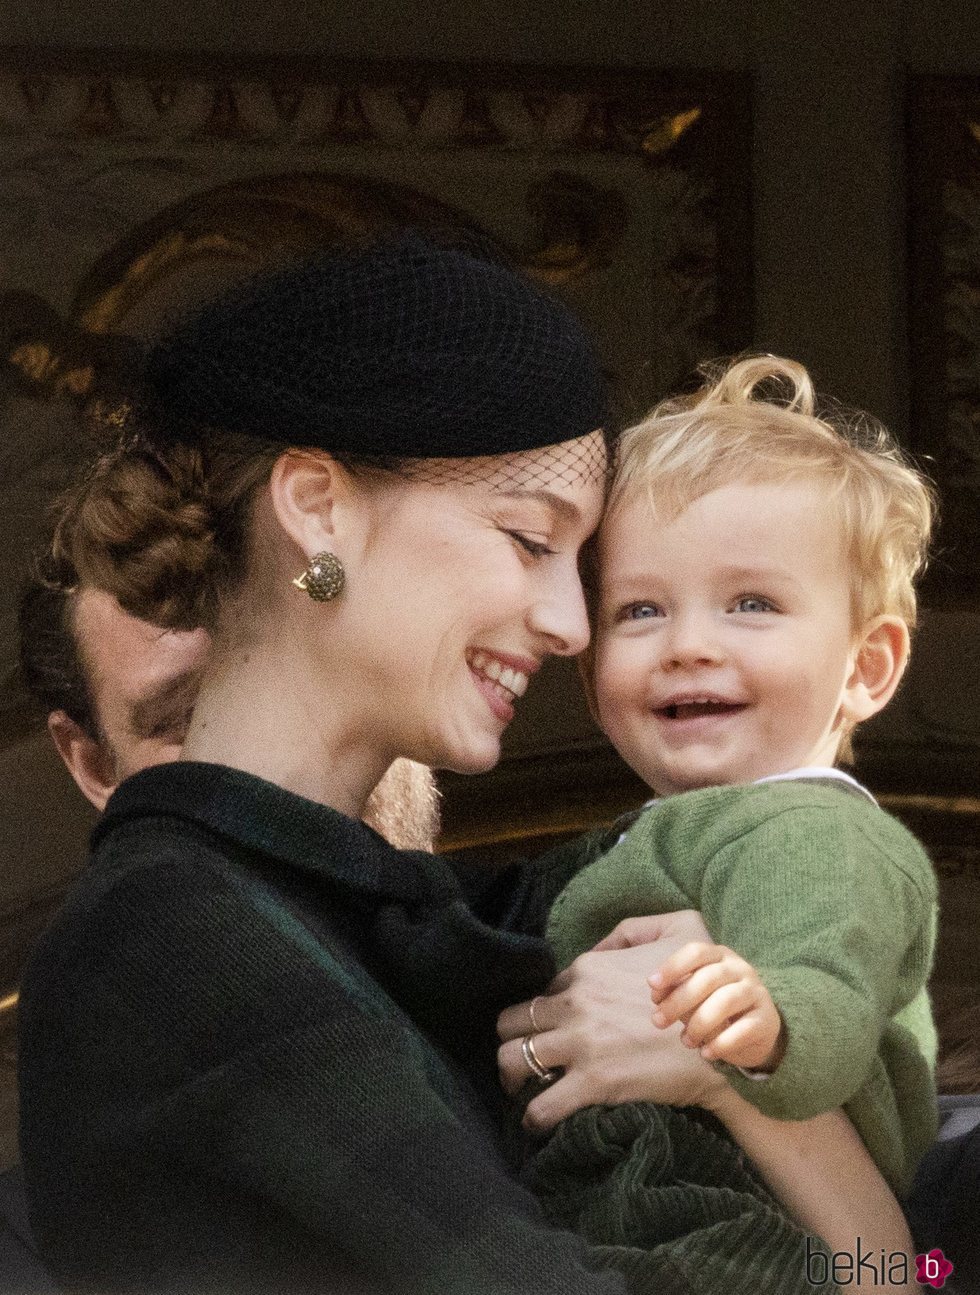 Beatrice Borromeo y su hijo Francesco Casiraghi, muy sonrientes en el Día Nacional de Mónaco 2019